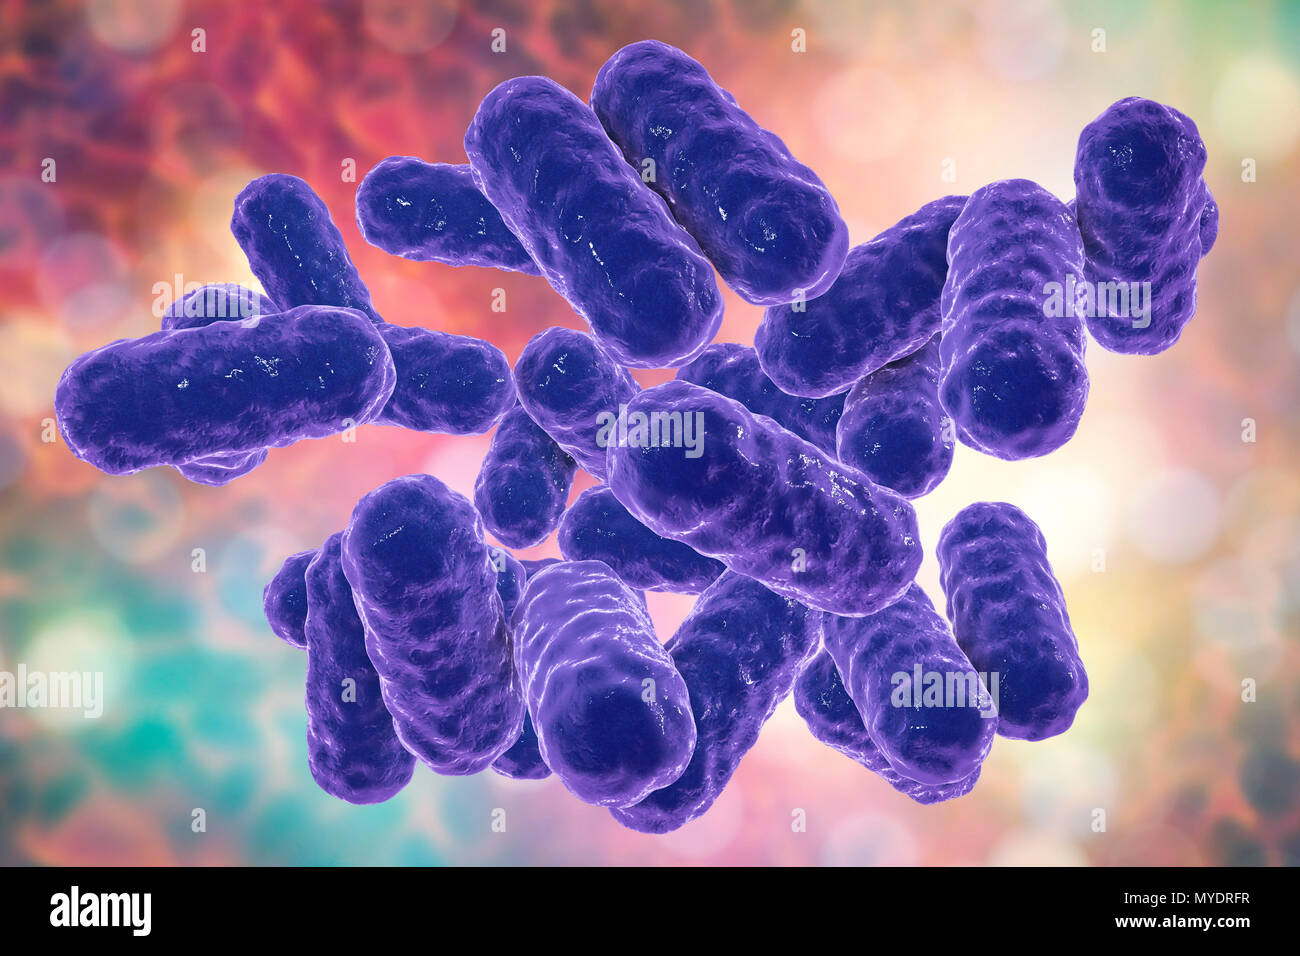 Enterobacter immagini e fotografie stock ad alta risoluzione - Alamy